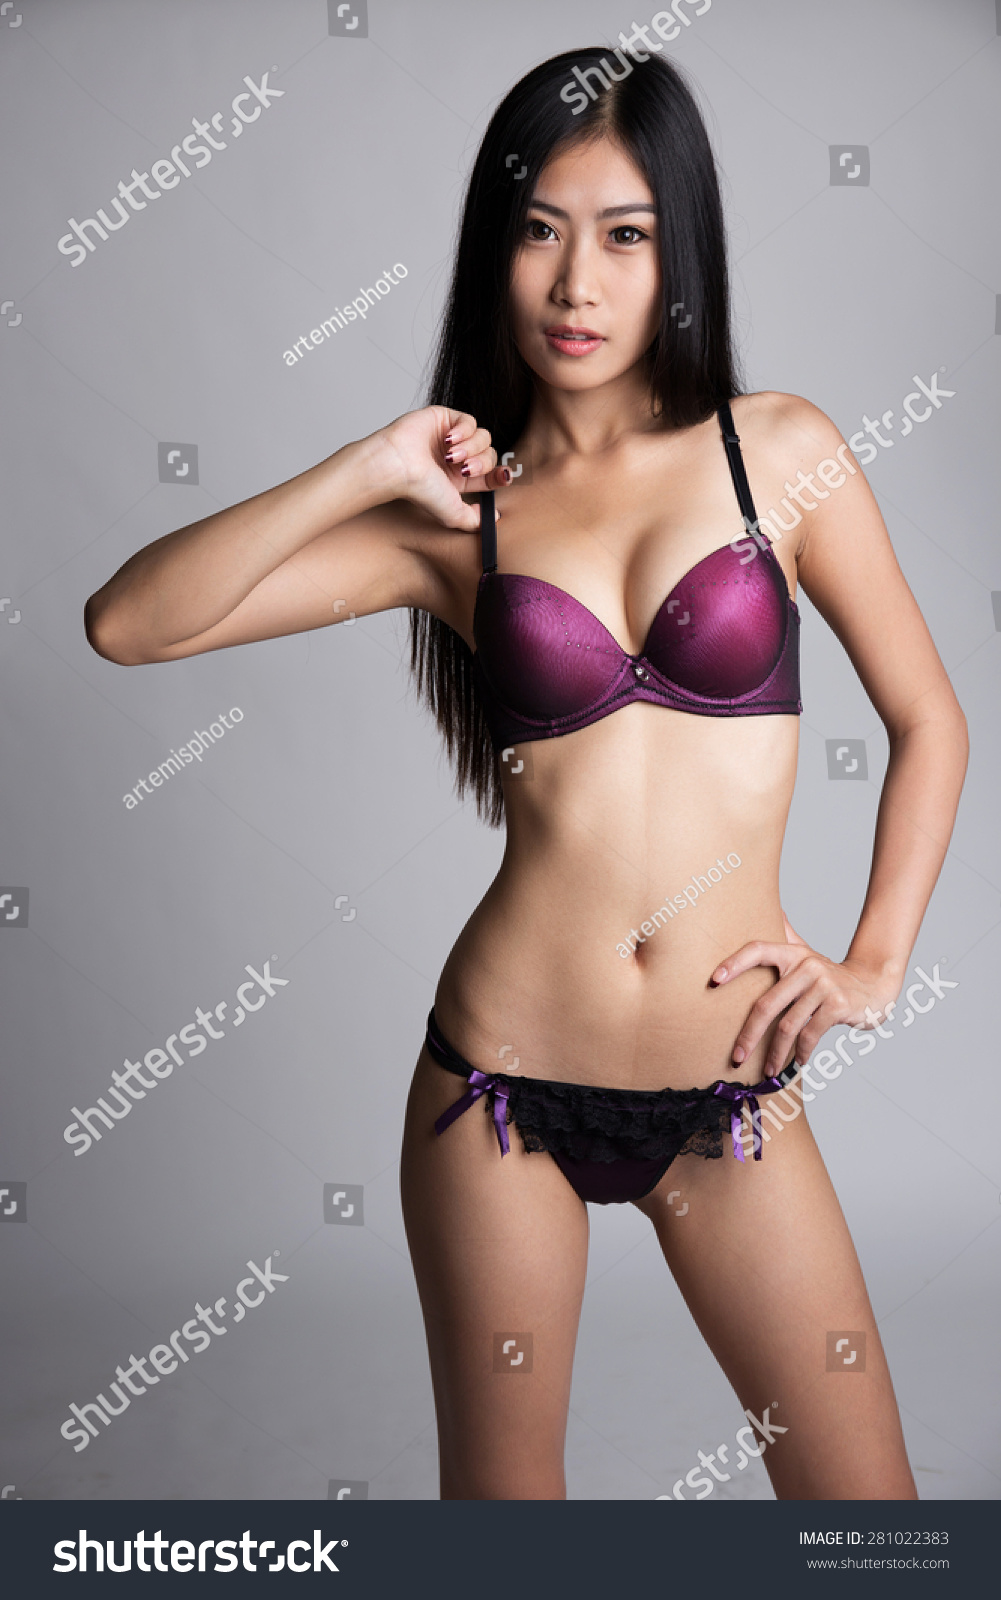 anshuman aaroh add young asian girls in panties photo